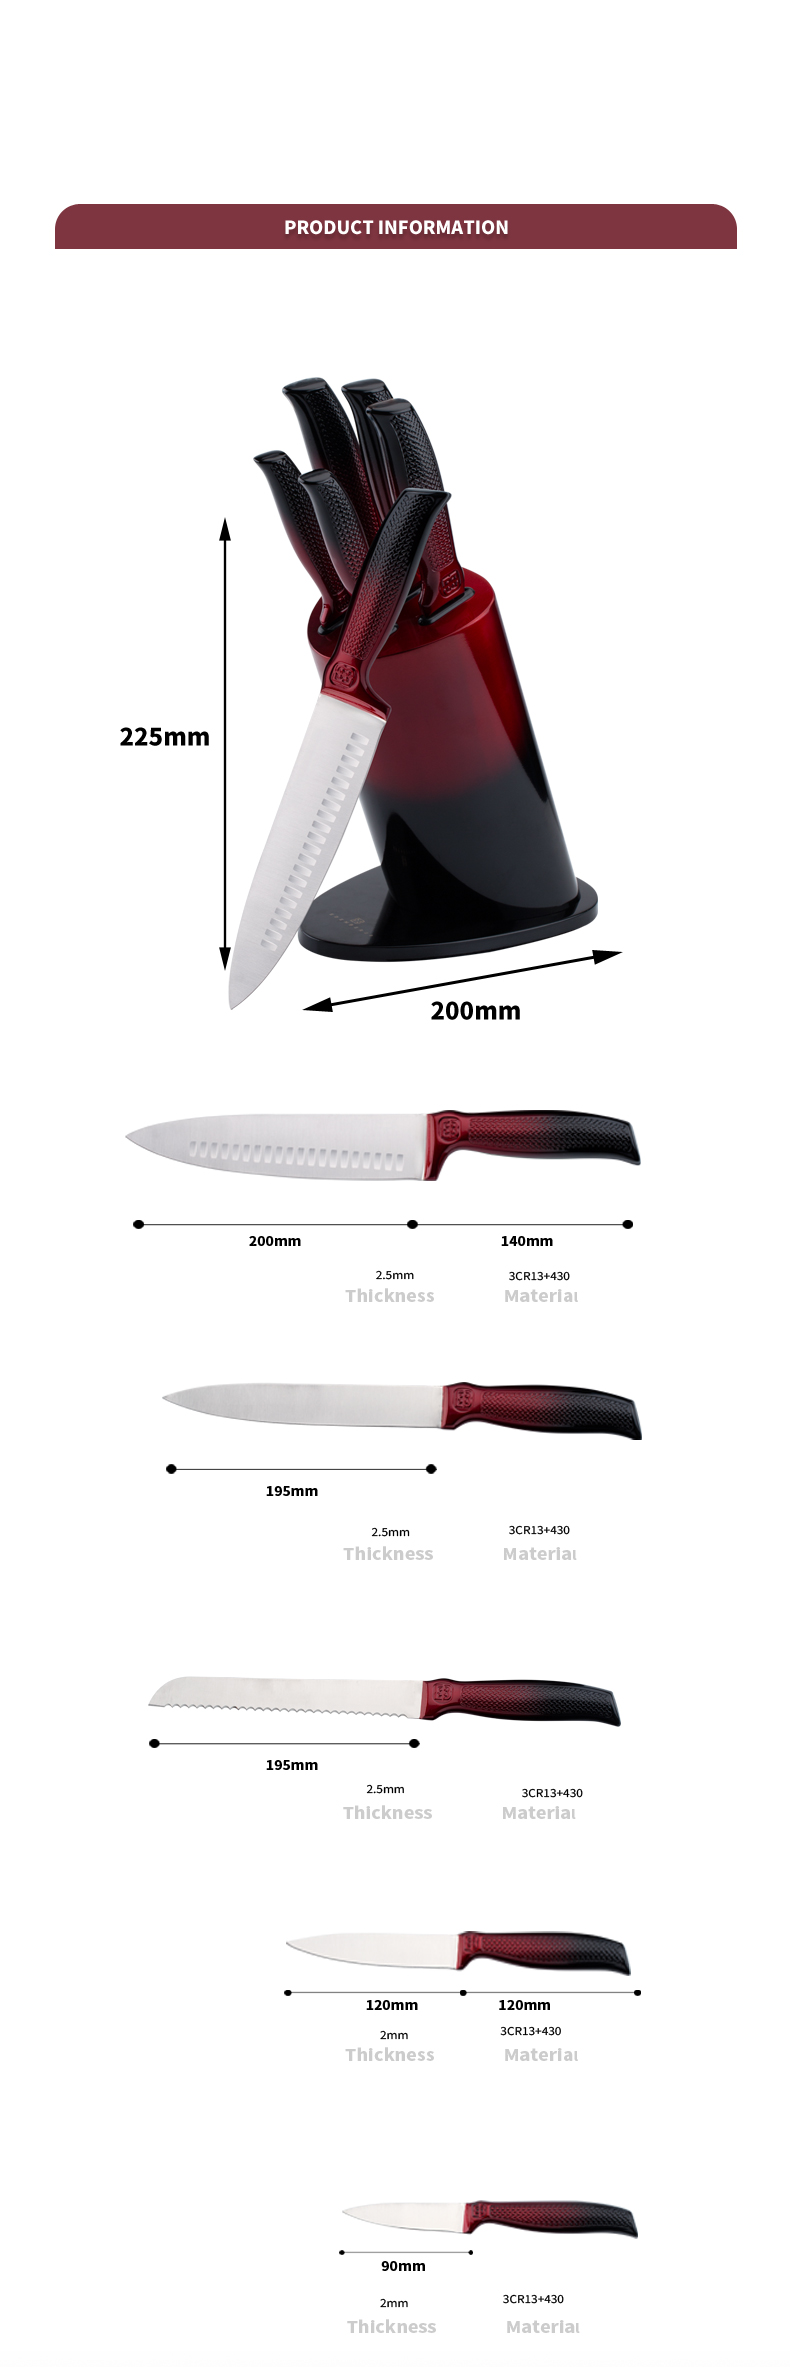 K129-Customized 5 ks 3cr13 Nerezový kuchyňský nůž Sada kuchařských nožů s barevným blokem-ZX | kuchyňský nůž,Kuchyňské náčiní,Silikonová forma na dort,prkénko,Sady náčiní na pečení,Nůž na kuchaře,Nůž na steaky,Nůž na krájení,Nástrojový nůž,Ořezávací nůž,Stojan na nože,Stojan na nože,Nůž Santoku,Nůž pro batolata,Plastový nůž,Nelepivé malování Nůž, Barevný nůž, Nerezový nůž, Otvírák na konzervy, Otvírák na láhve, Sítko na čaj, Struhadlo, Šlehač na vejce, Nylonové kuchyňské náčiní, Silikonový kuchyňský nástroj, Vykrajovátka, Sada nožů na vaření, Brousek na nože, Škrabka, Nůž na dort, Nůž na sýr, Nůž,Silikonová špachtle,Silikonová lžička,Tong na jídlo,Kovaný nůž,Kuchyňské nůžky,nože na pečení dortů,Dětské nože na vaření,Nůž na vyřezávání